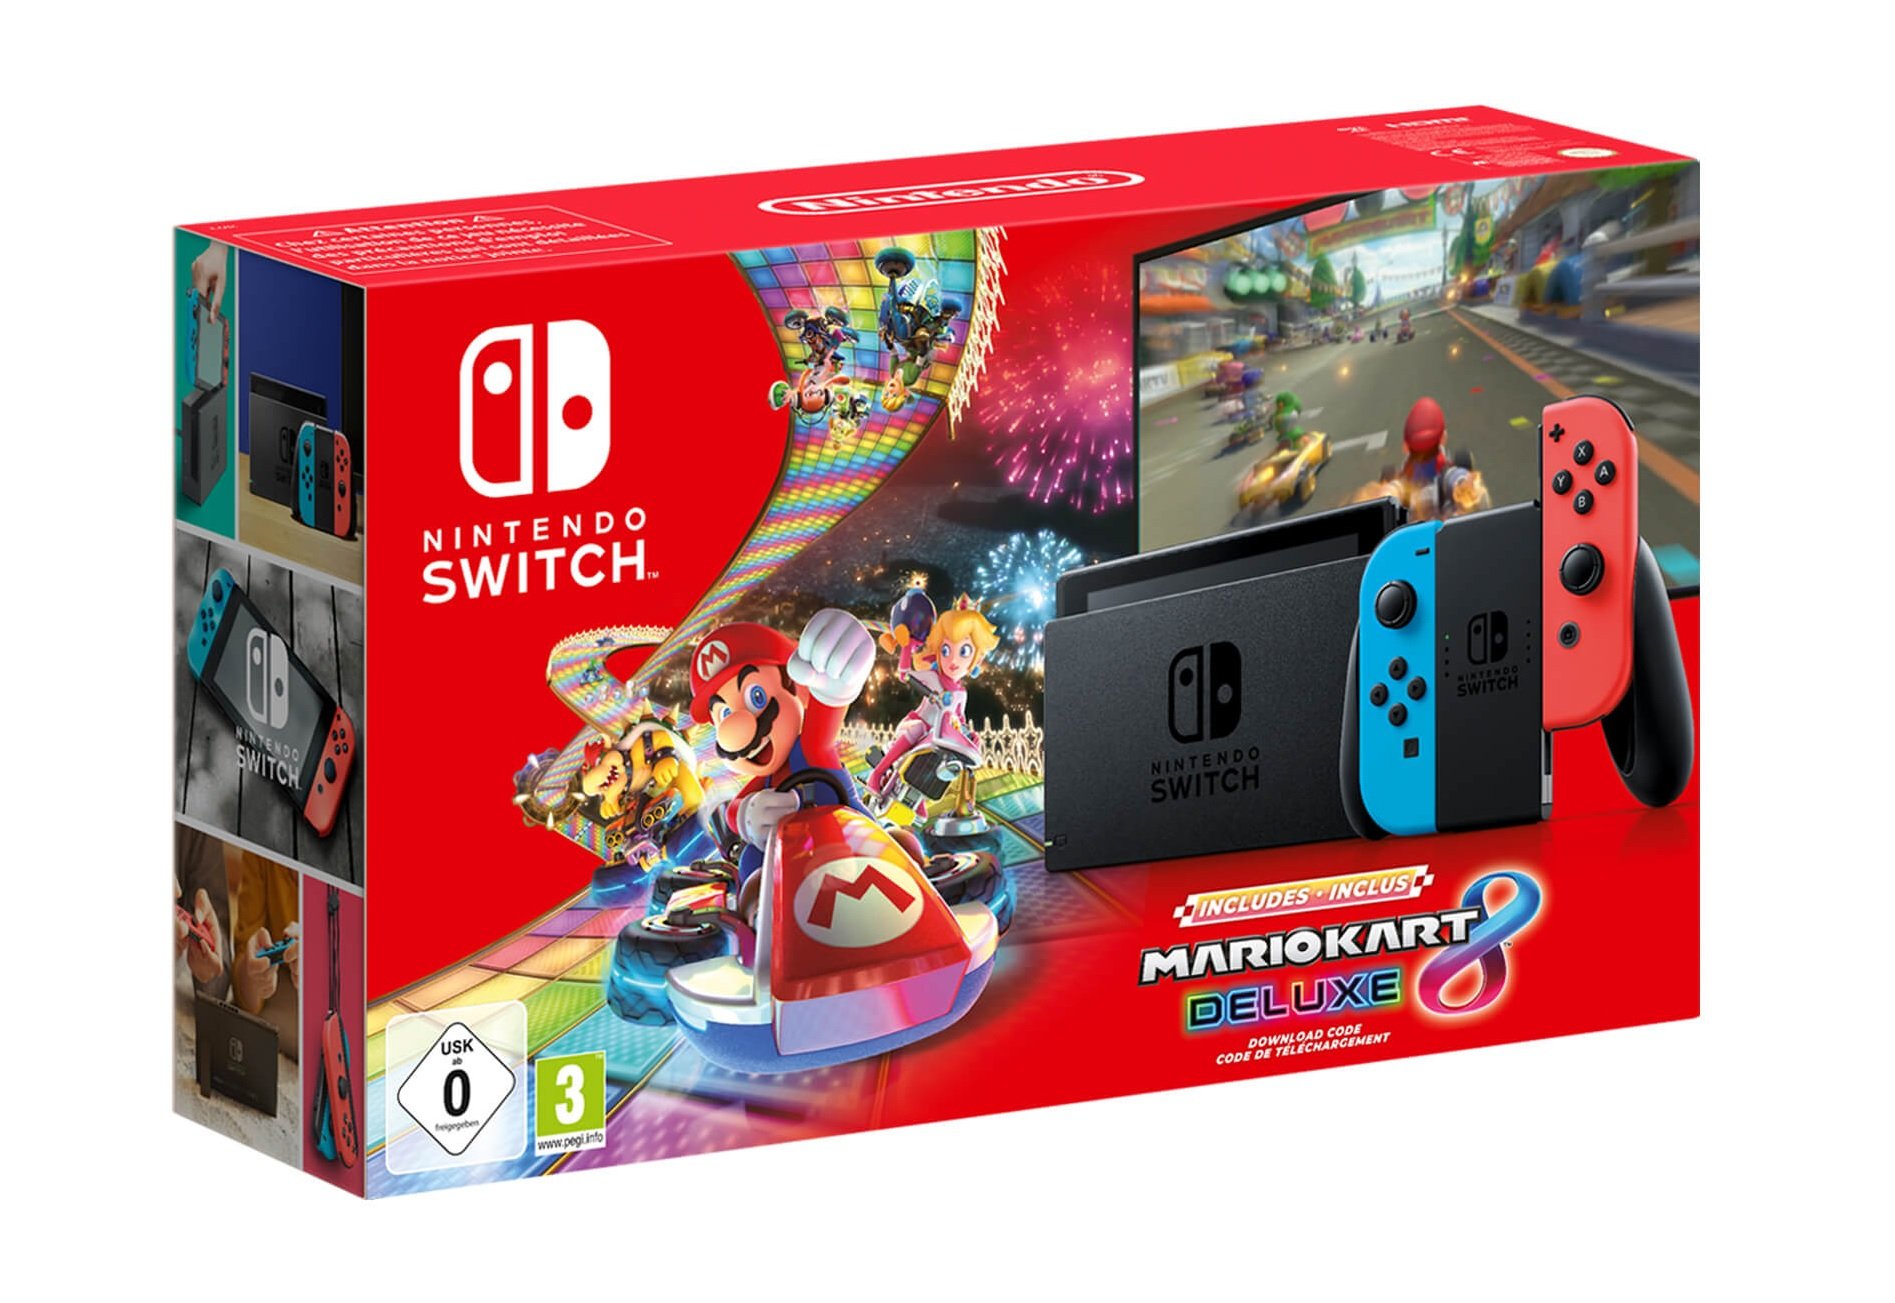 Notitie maagpijn Diploma Nintendo Switch Mario Kart 8 bundle is now £279.99 | VGC